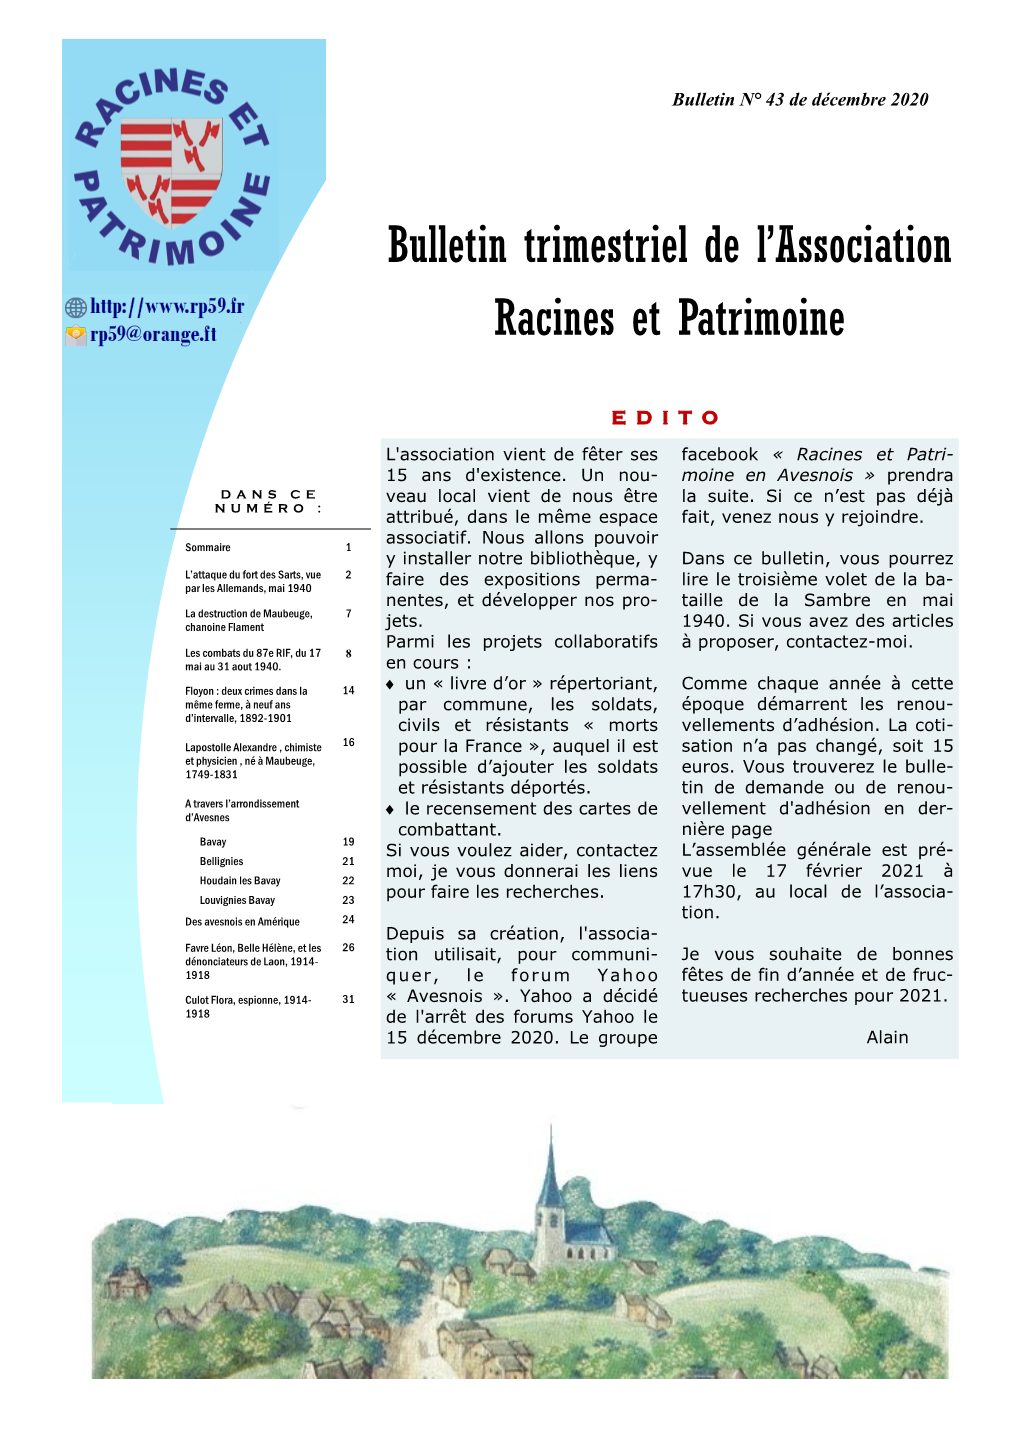 Bulletin Trimestriel De L'association Racines Et Patrimoine